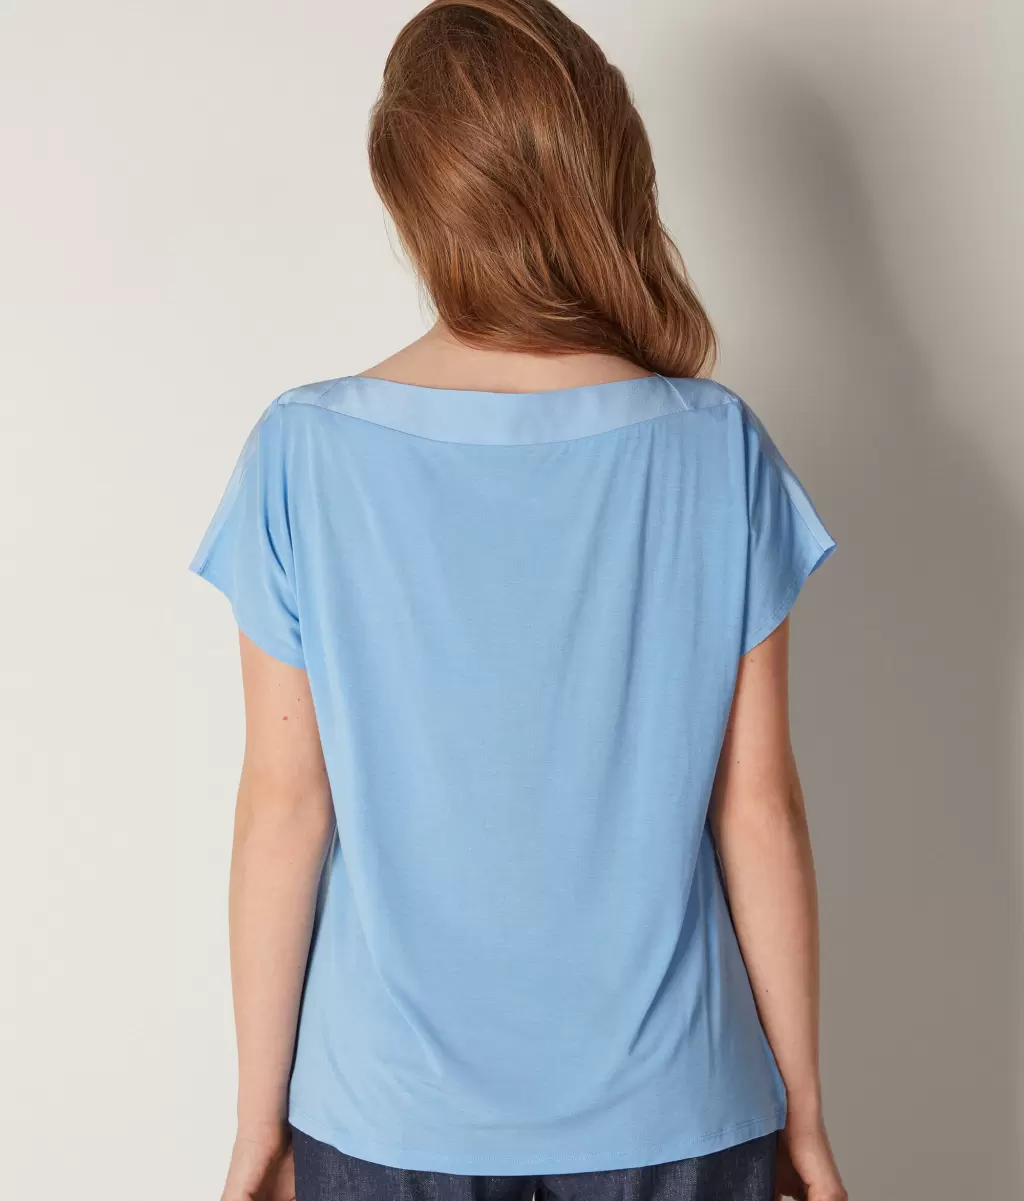 Falconeri Kobieta Blue Koszulka Z Dekoltem W Łódkę Z Jedwabiu I Modalu Topy I T-Shirty - 2